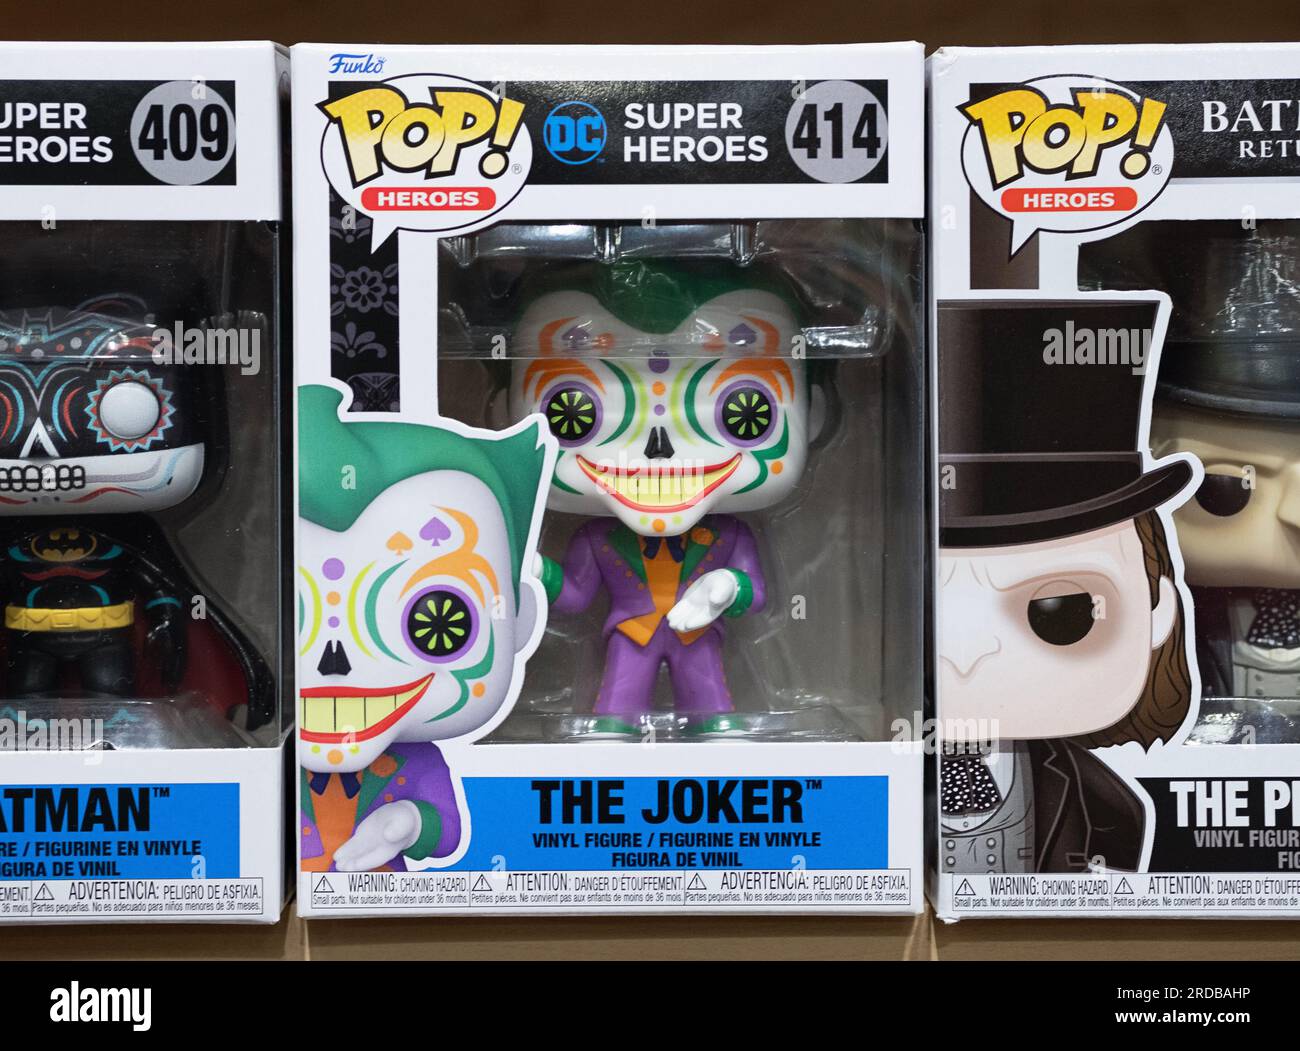 Una statuetta Funko Pop del Joker, un cattivo dei fumetti. In vendita a Newbury Comics, un negozio nel centro commerciale Danbury Fair nel Connecticut. Foto Stock